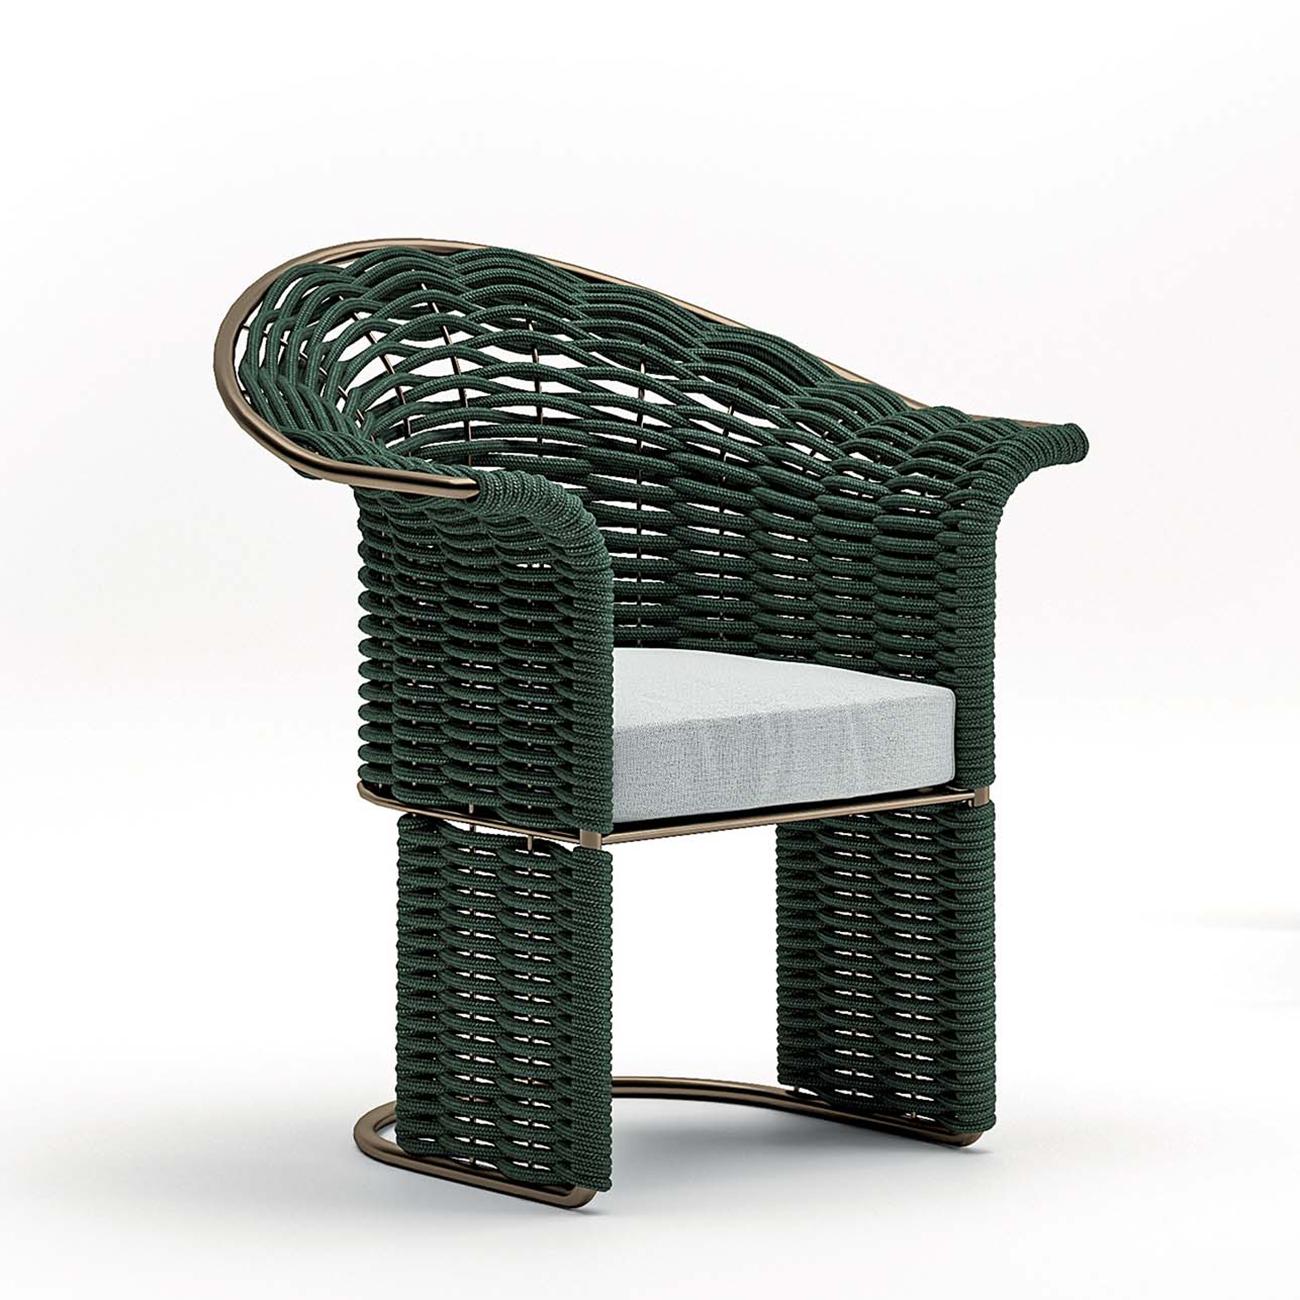 Chaise Dawn Outdoor avec structure en acier inoxydable.
en finition bronze, avec siège coussin rembourré et couvert 
avec un tissu d'extérieur de haute qualité. Dossier, accoudoirs et base
fait avec une corde verte tissée.